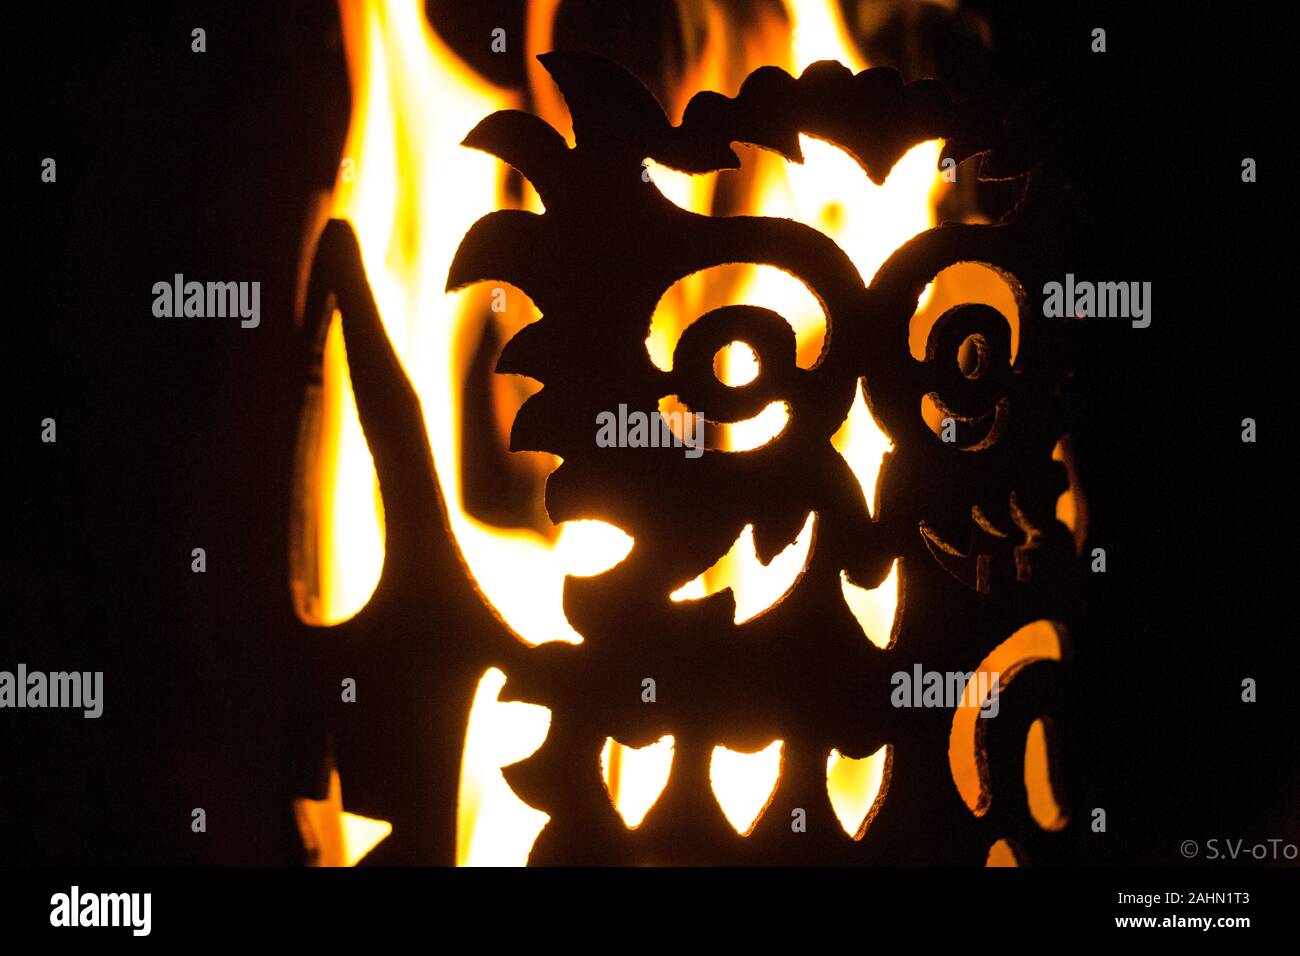 Feuer & Eis - Fotos mit Feuer hinter Eis Glänzende helle Stockfoto